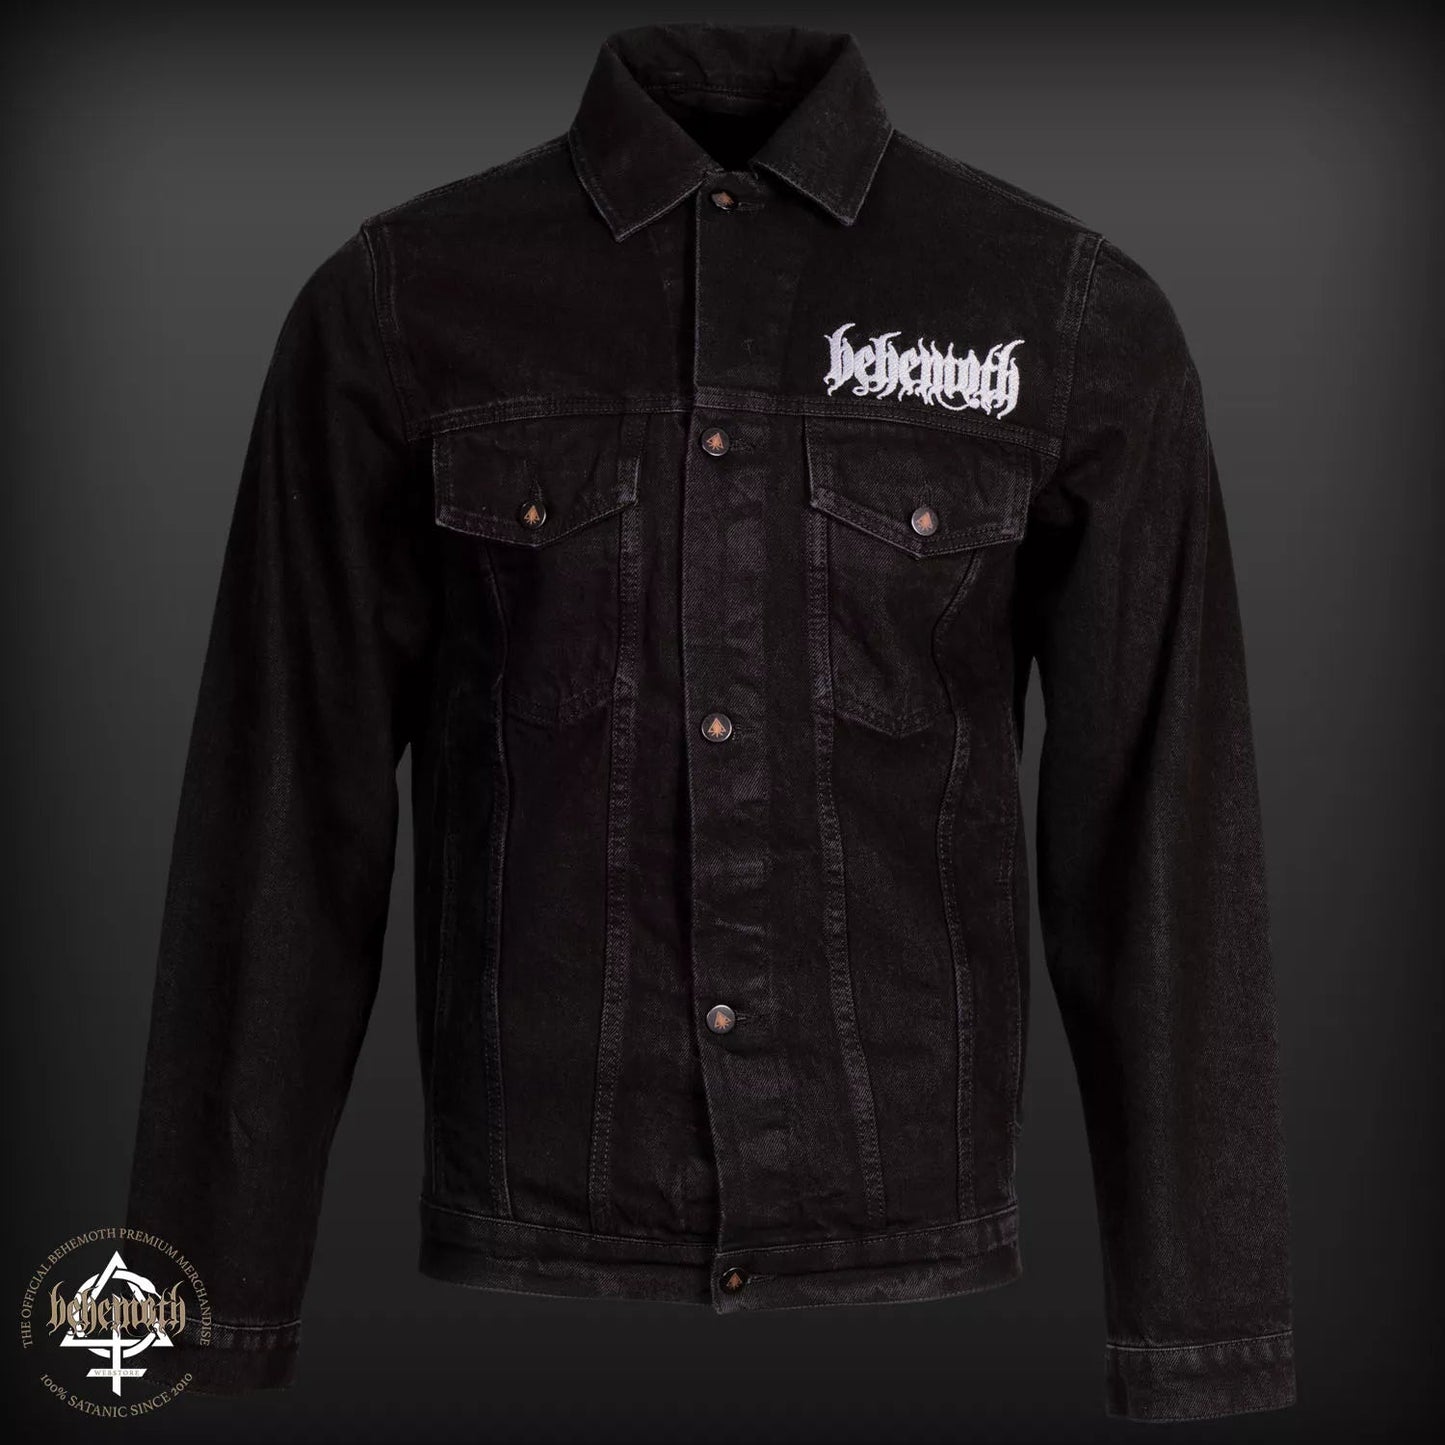 Behemoth 'Logo' Denim Jacket